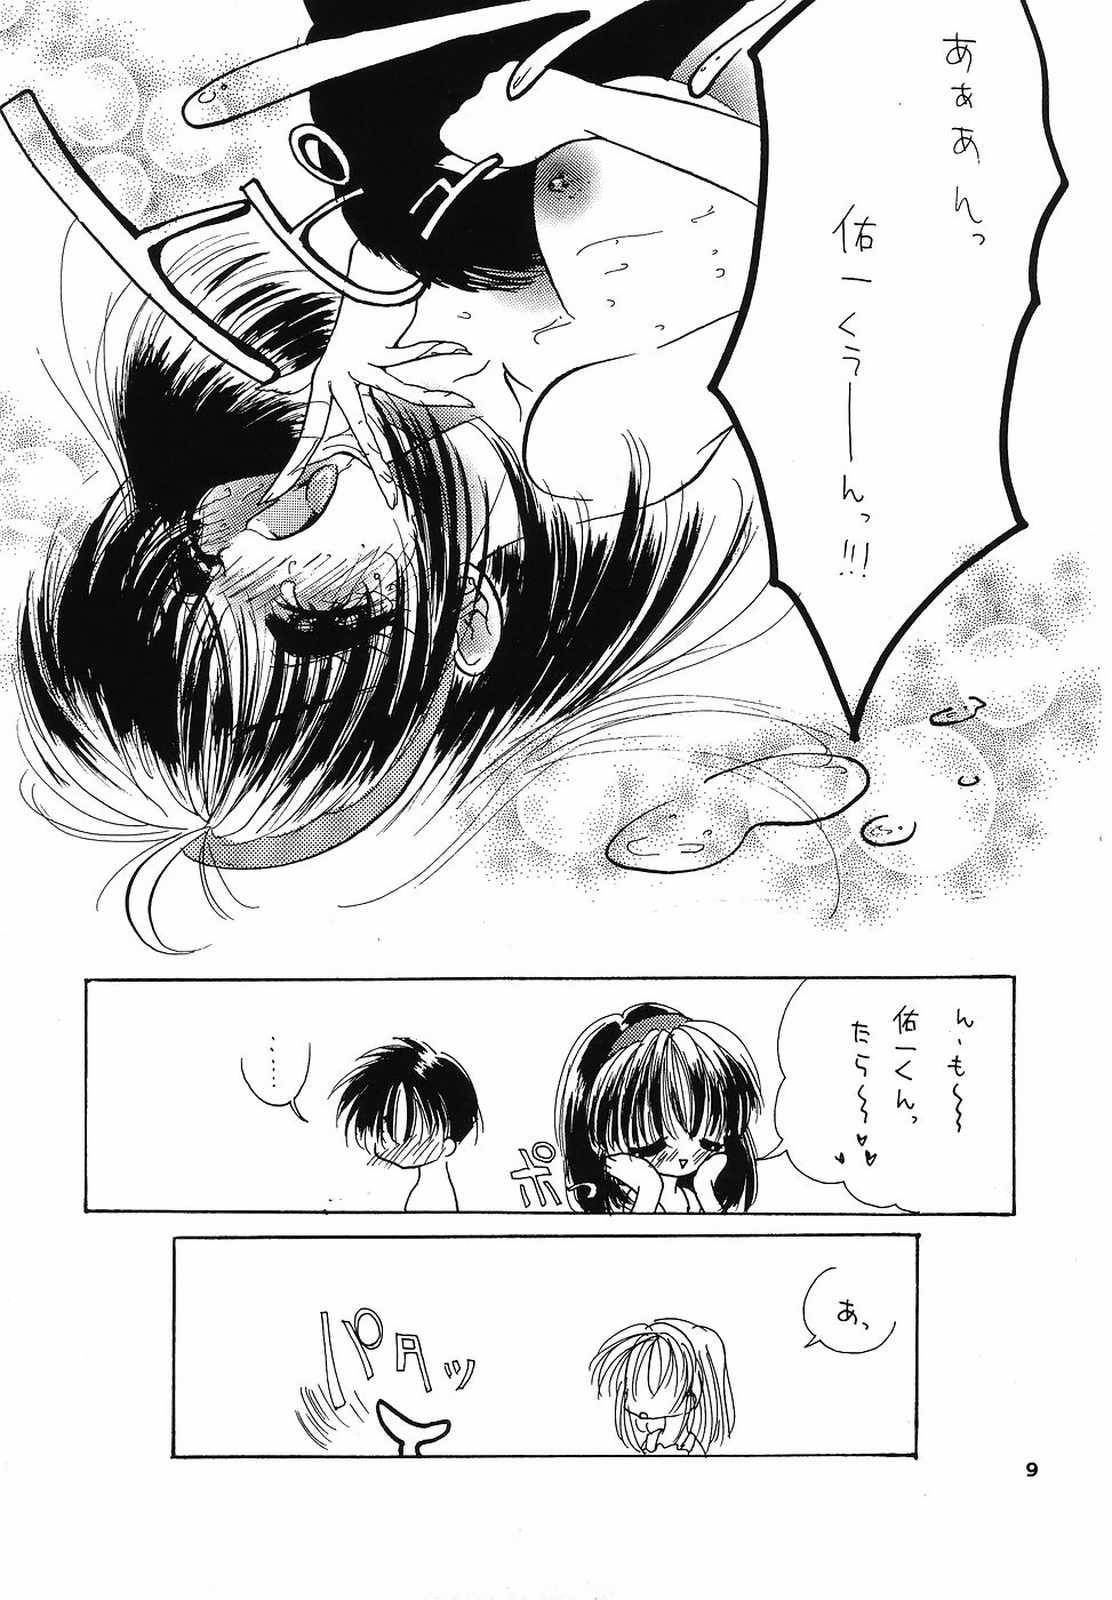 Thief eroero Vol.4 - Sakura taisen Kanon Shaking - Page 8